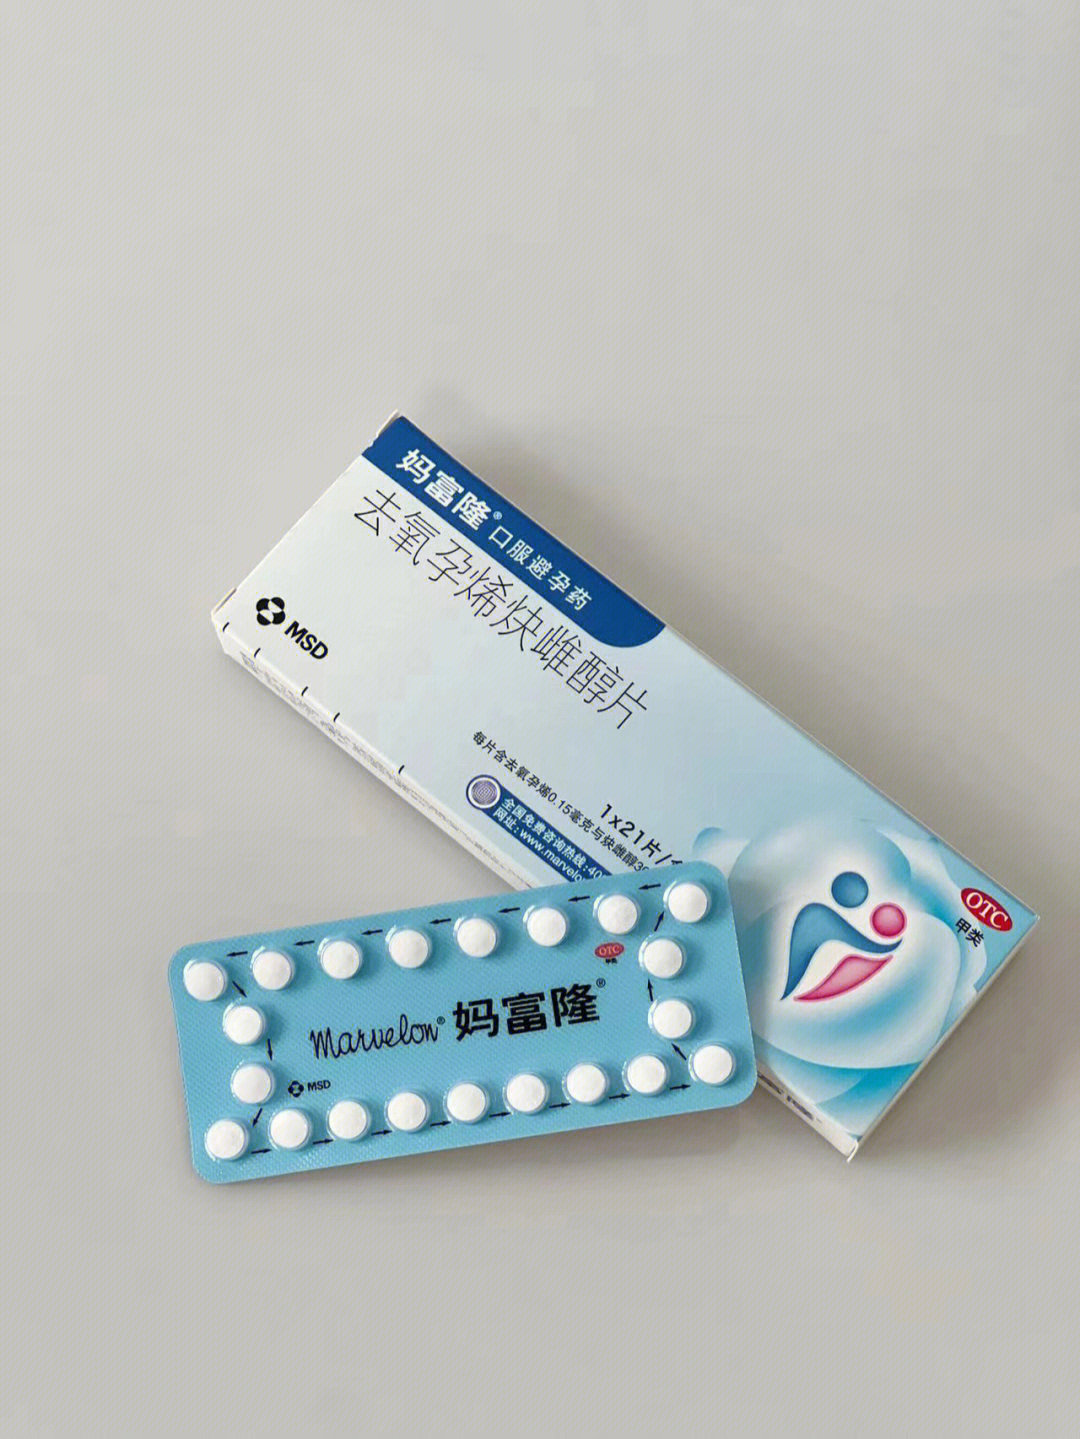 短效避孕药是很常见的避孕方式也是一种适合日常的避孕选择是通过